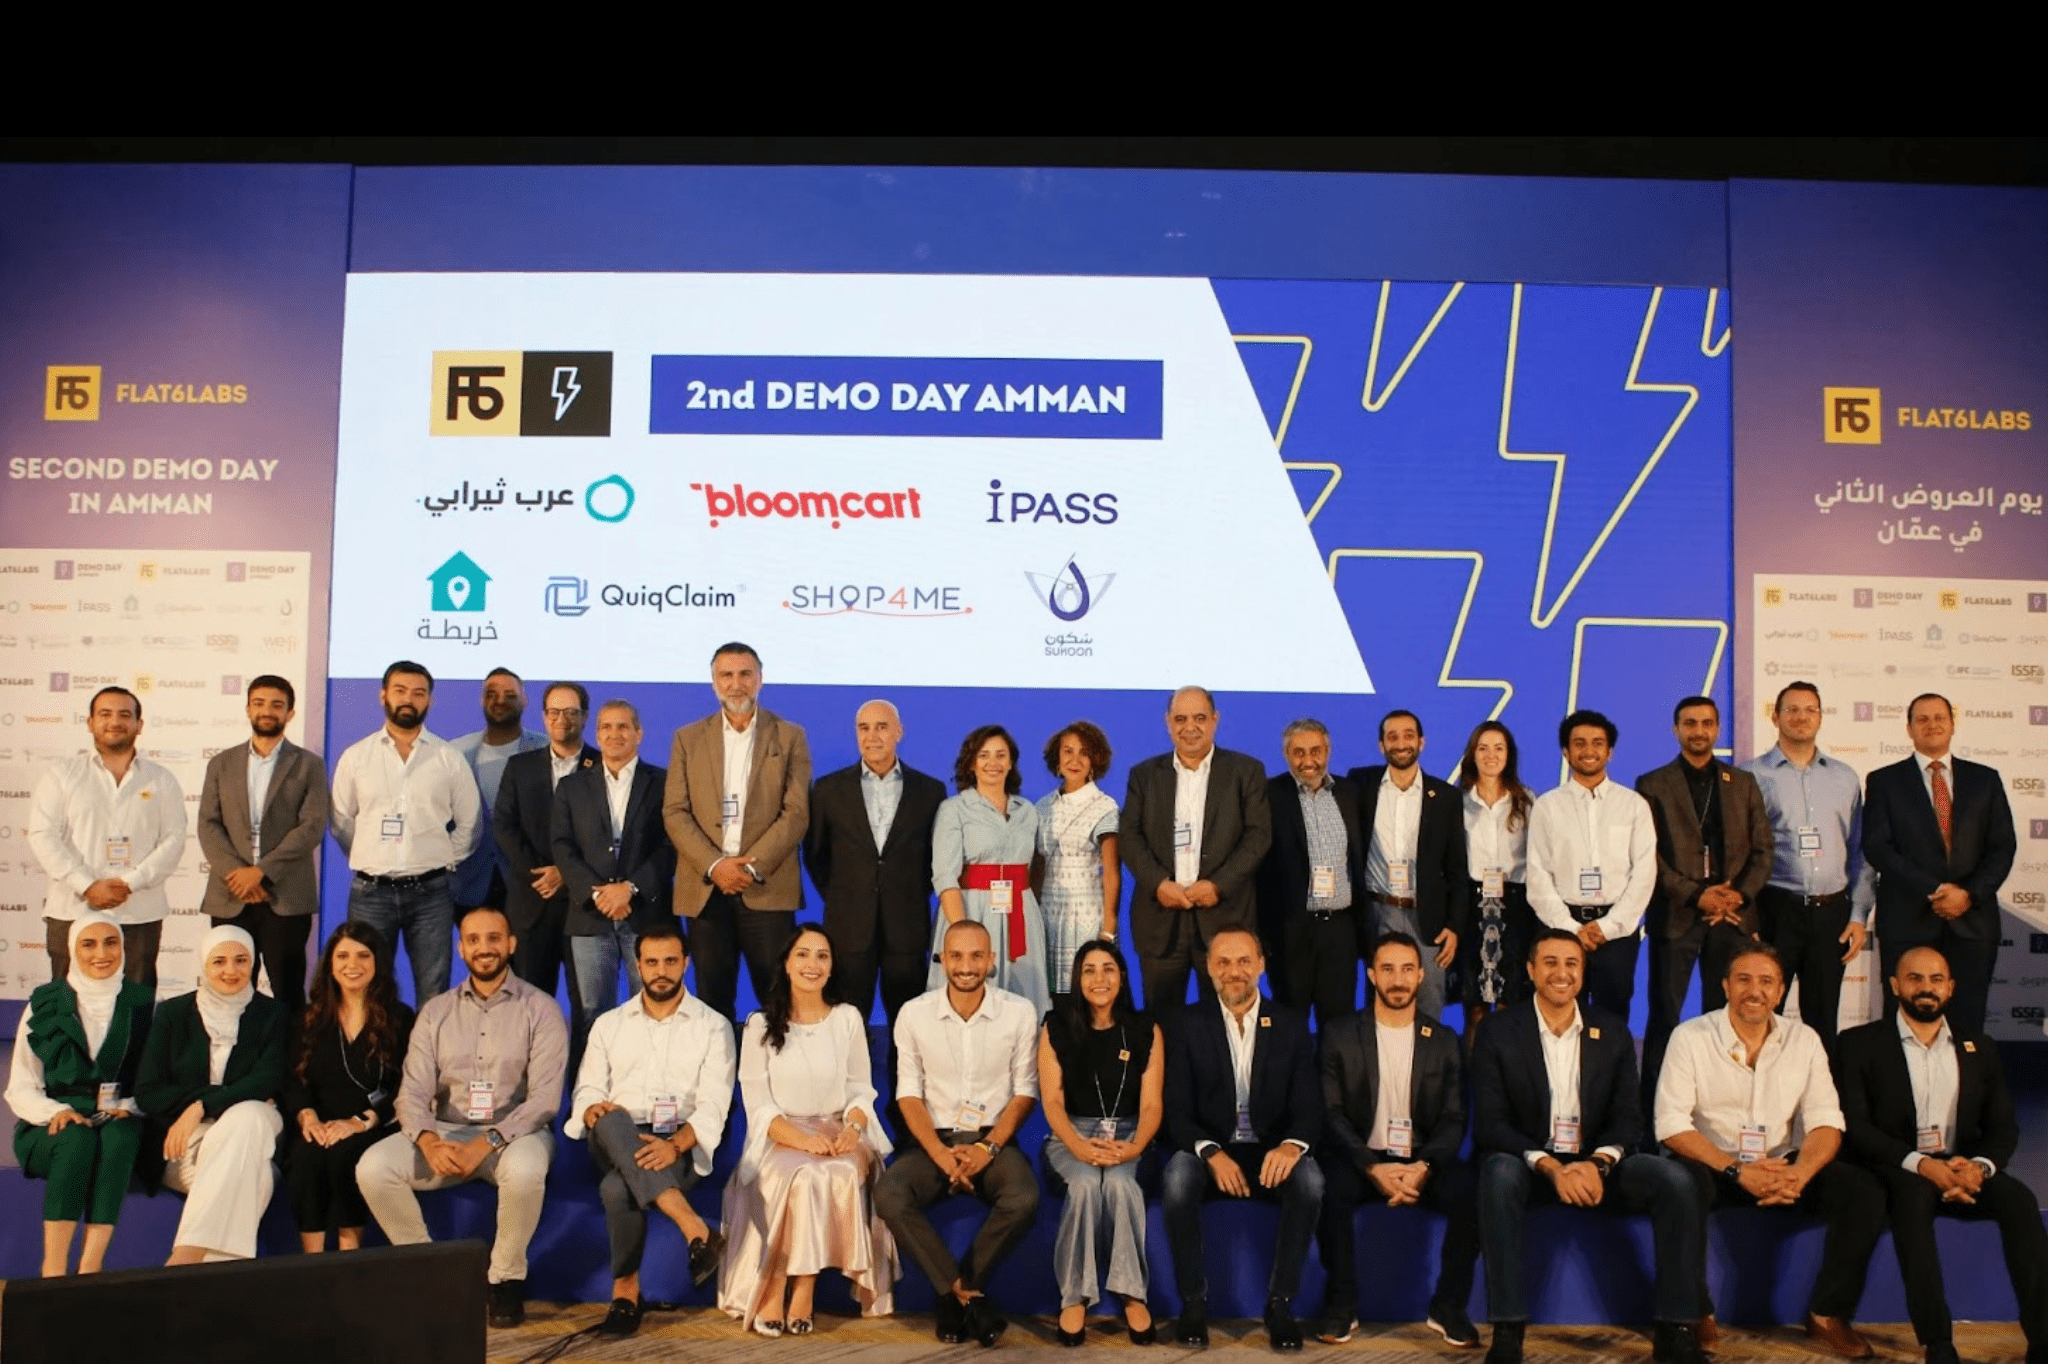 Flat6Labs تحتفل بتخريج 7 شركات ناشئة جديدة في يوم العروض الثاني في الأردن